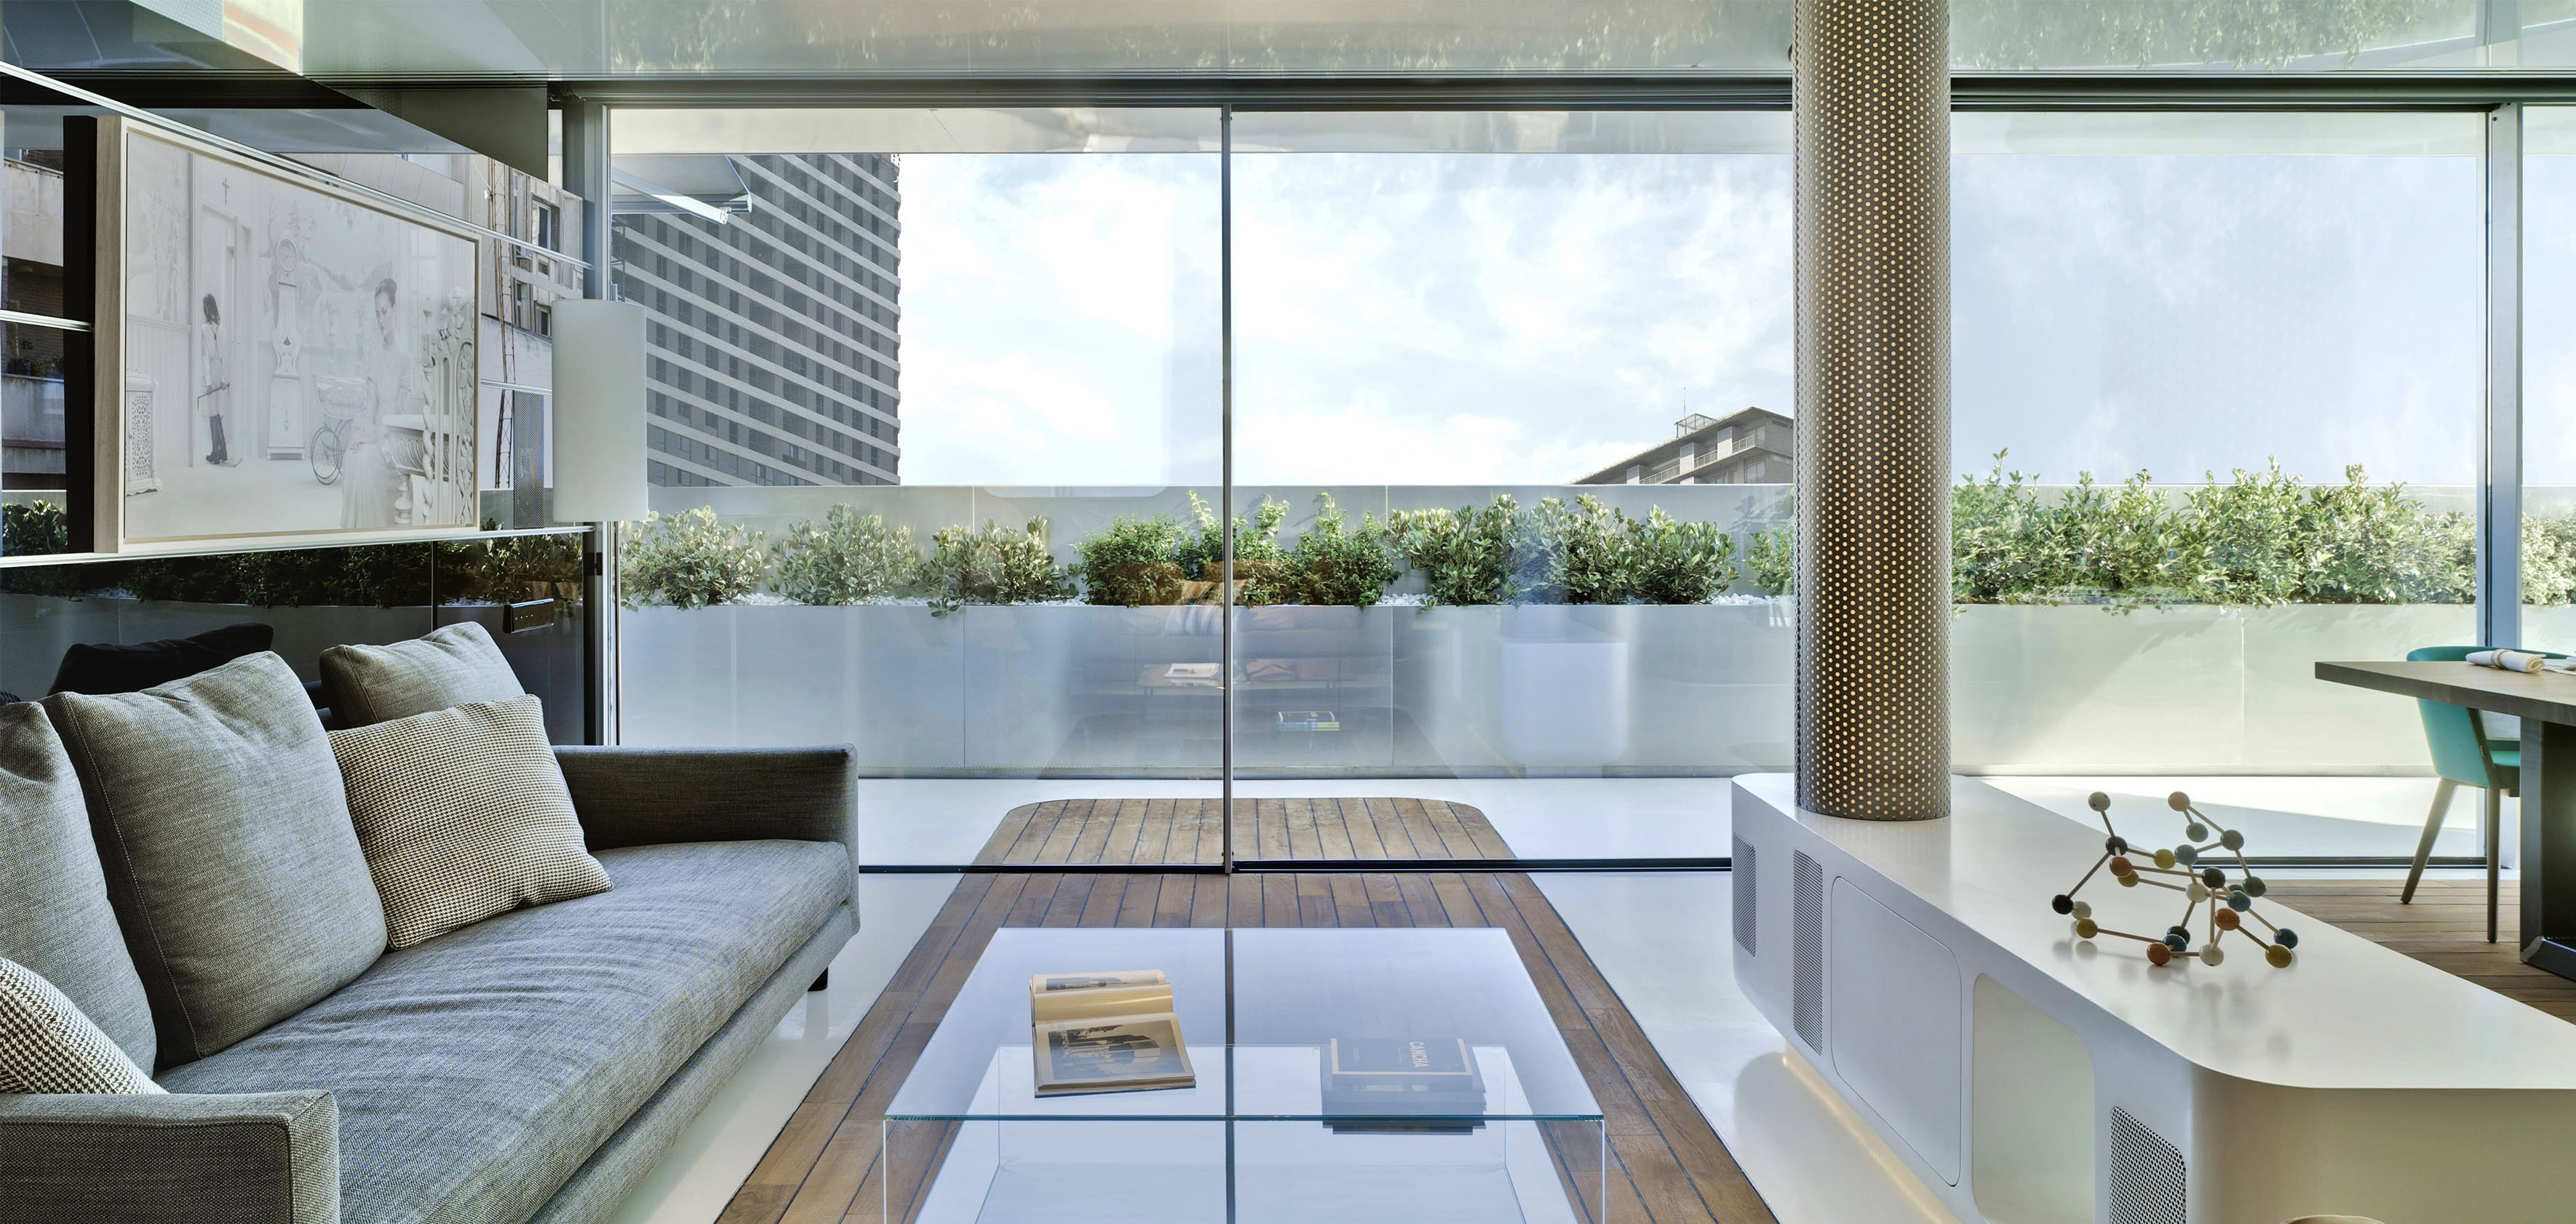 Penthouse avec vue panoramique grace à de grands coulissants minimalistes